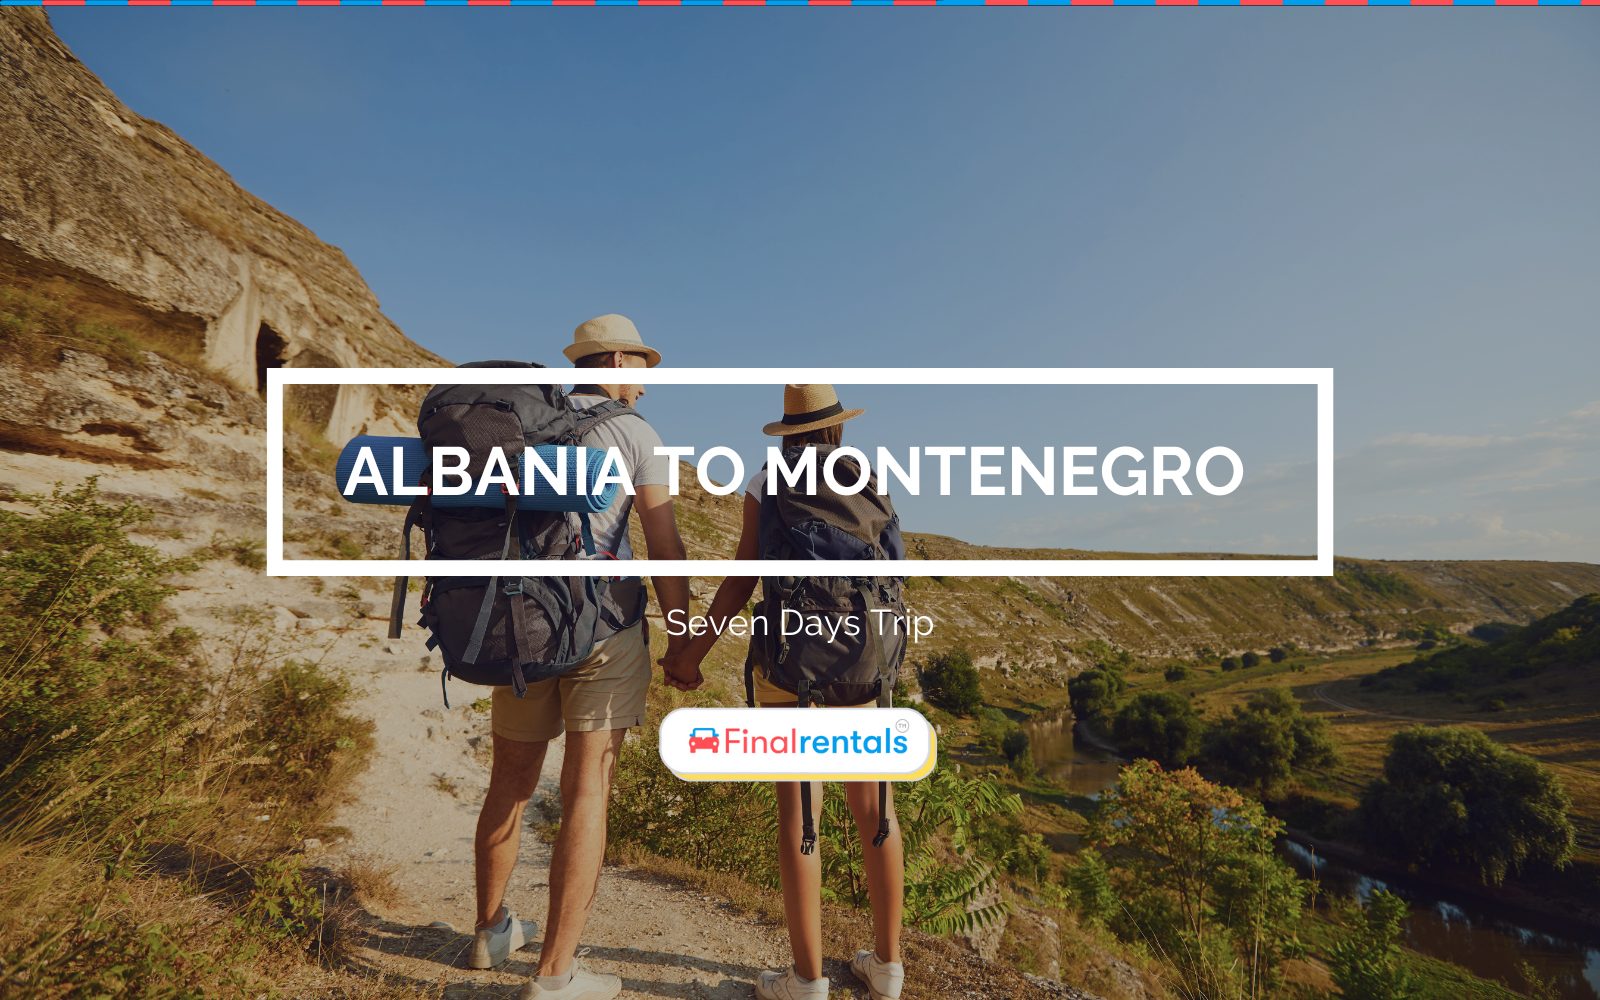 Albania to Montenegro